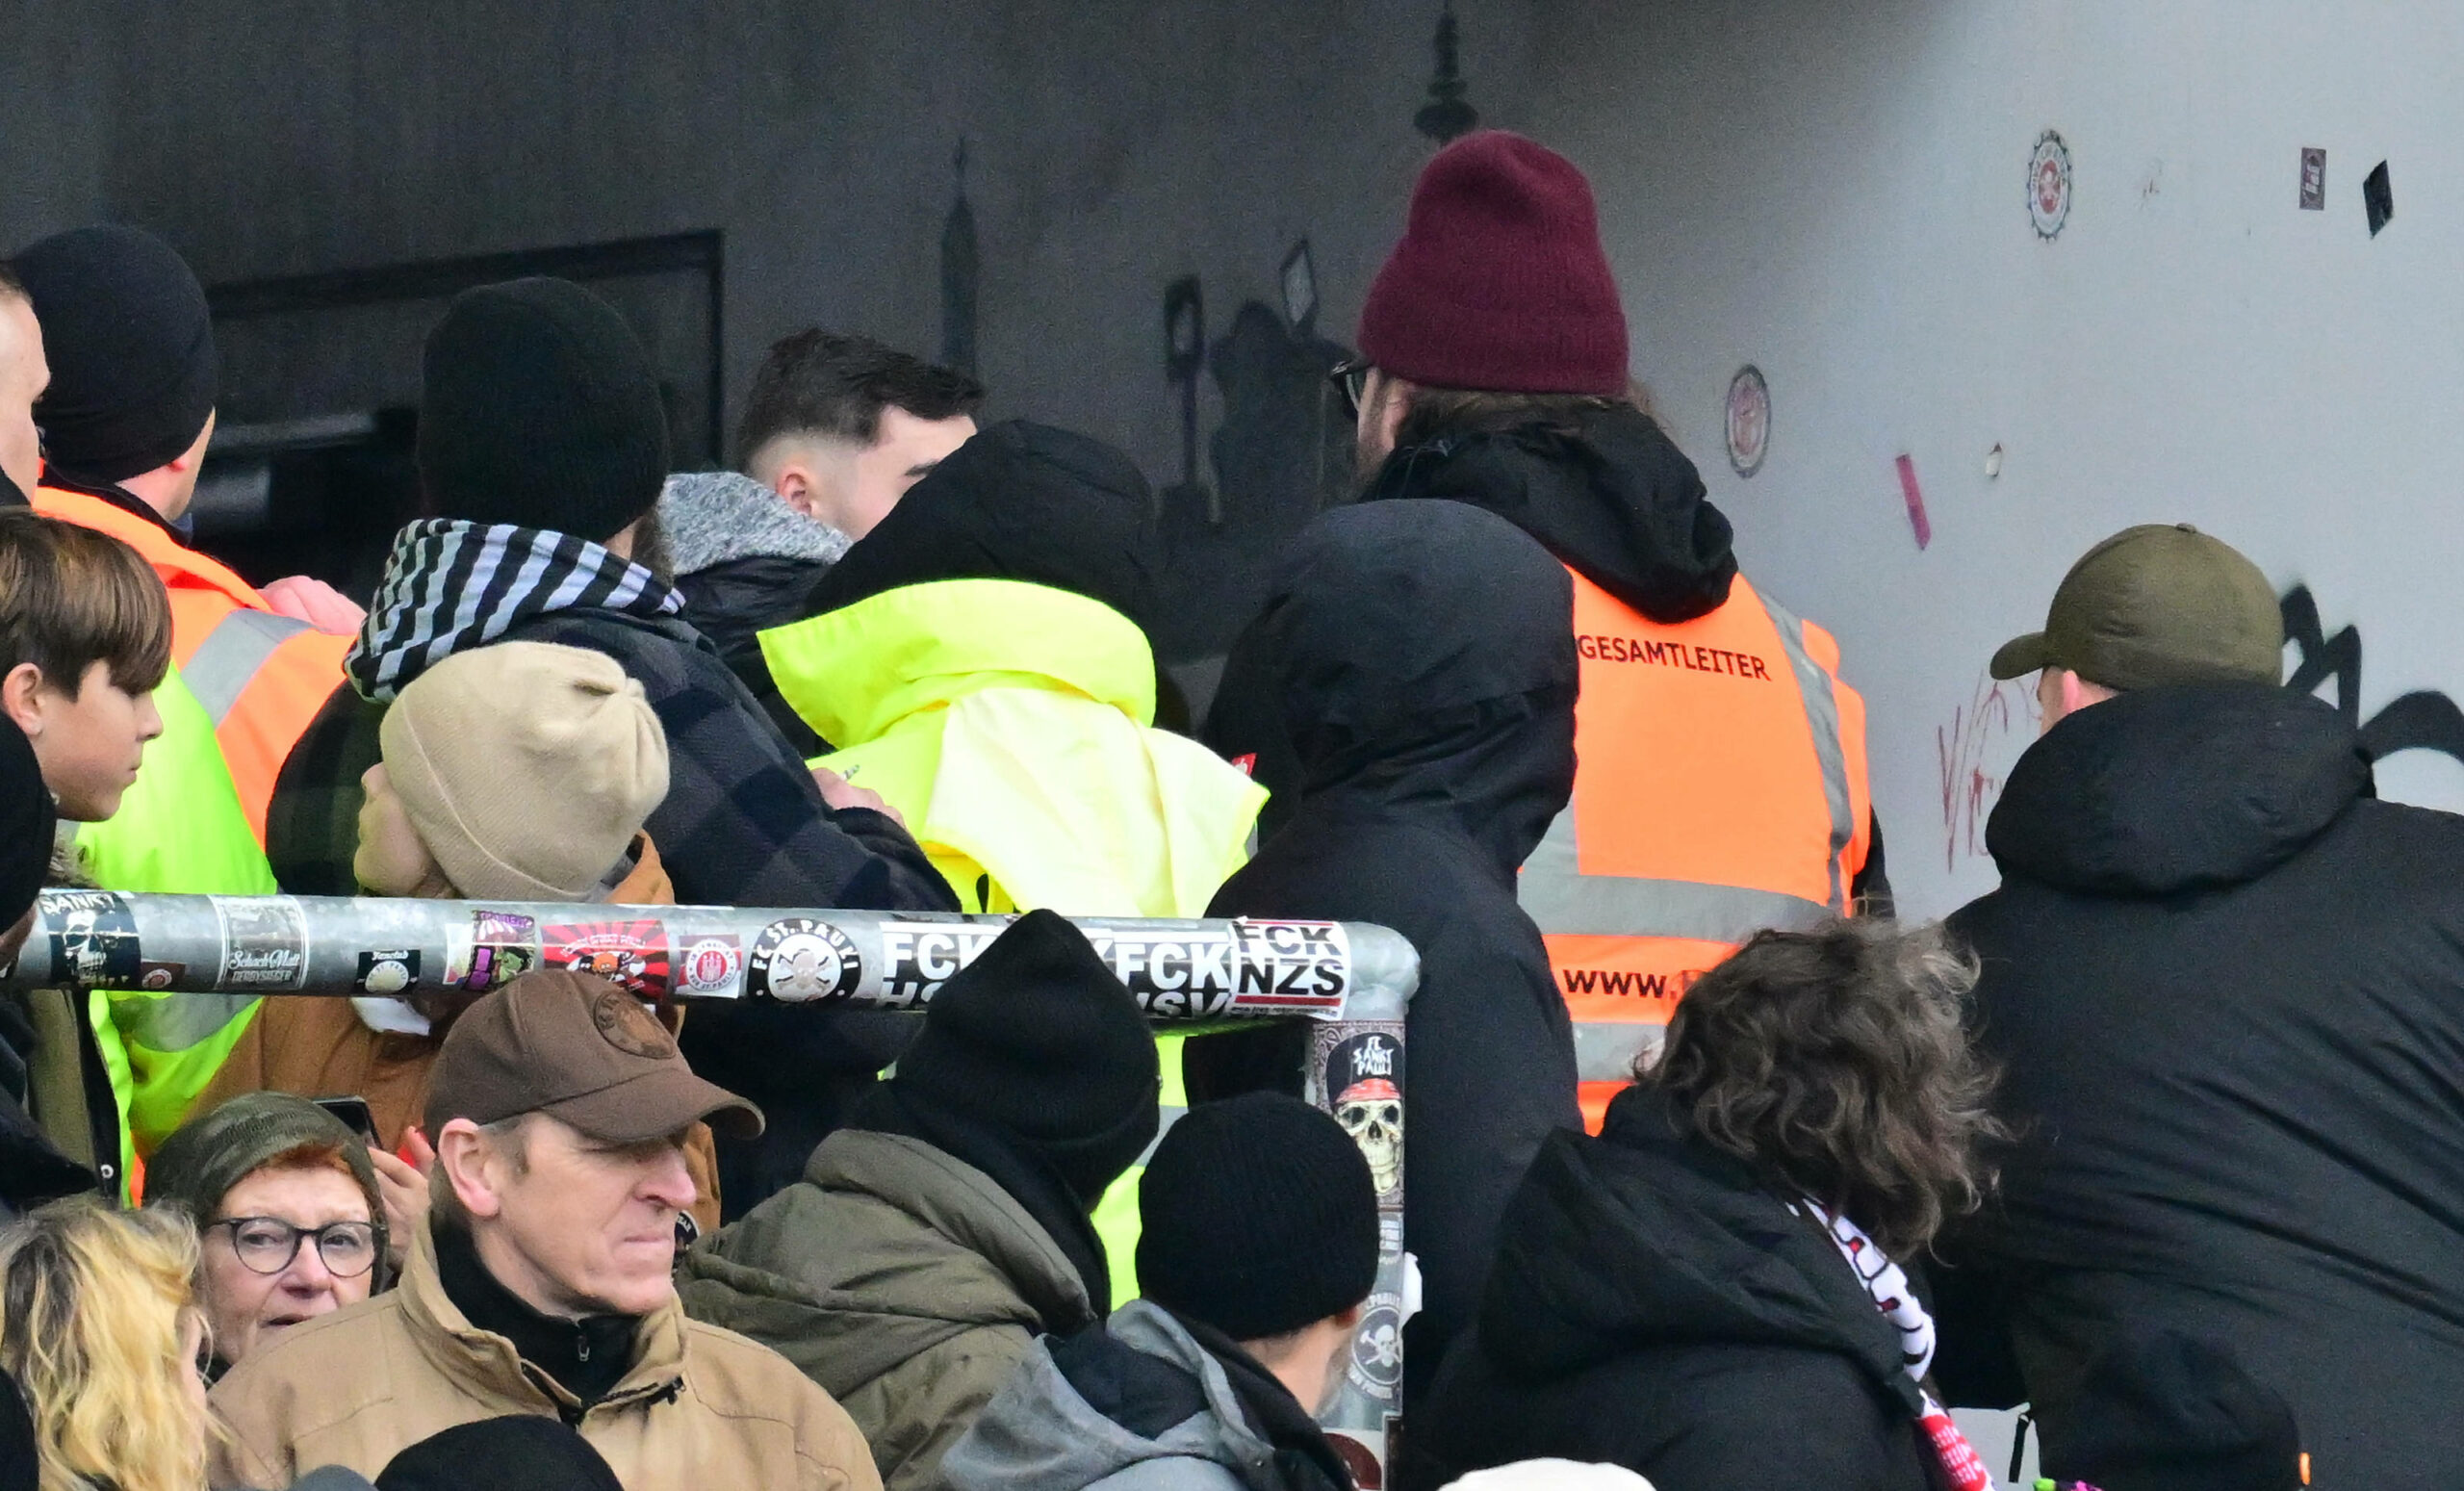 Der mutmaßliche Böllerwerfer )(verdeckt) wird von Ordnern aus dem Stadion geleitet.